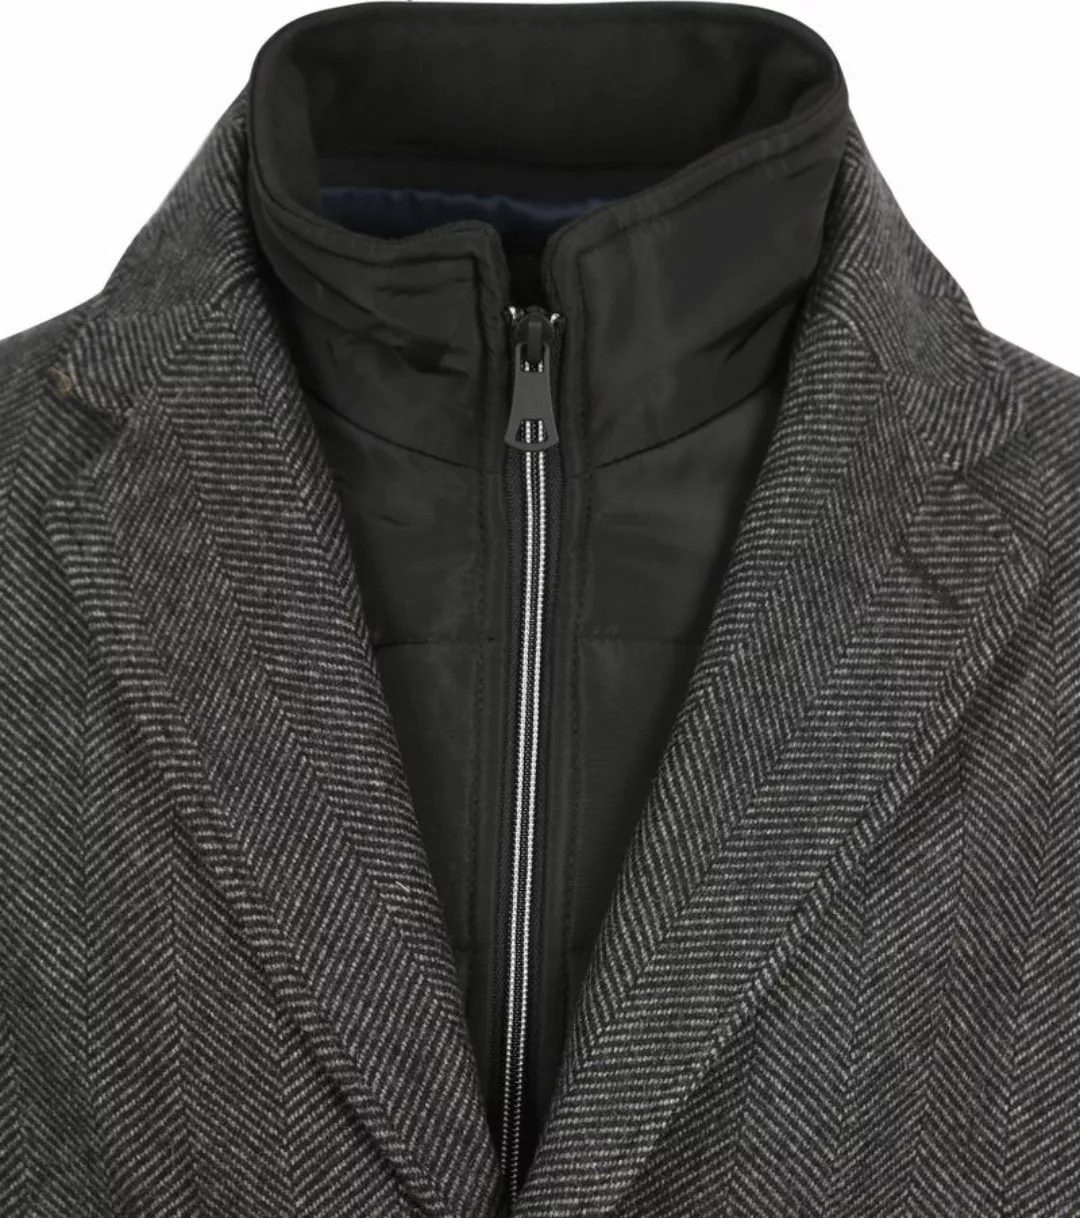 Suitable Job Coat Wolle Herringbone Grau - Größe 48 günstig online kaufen